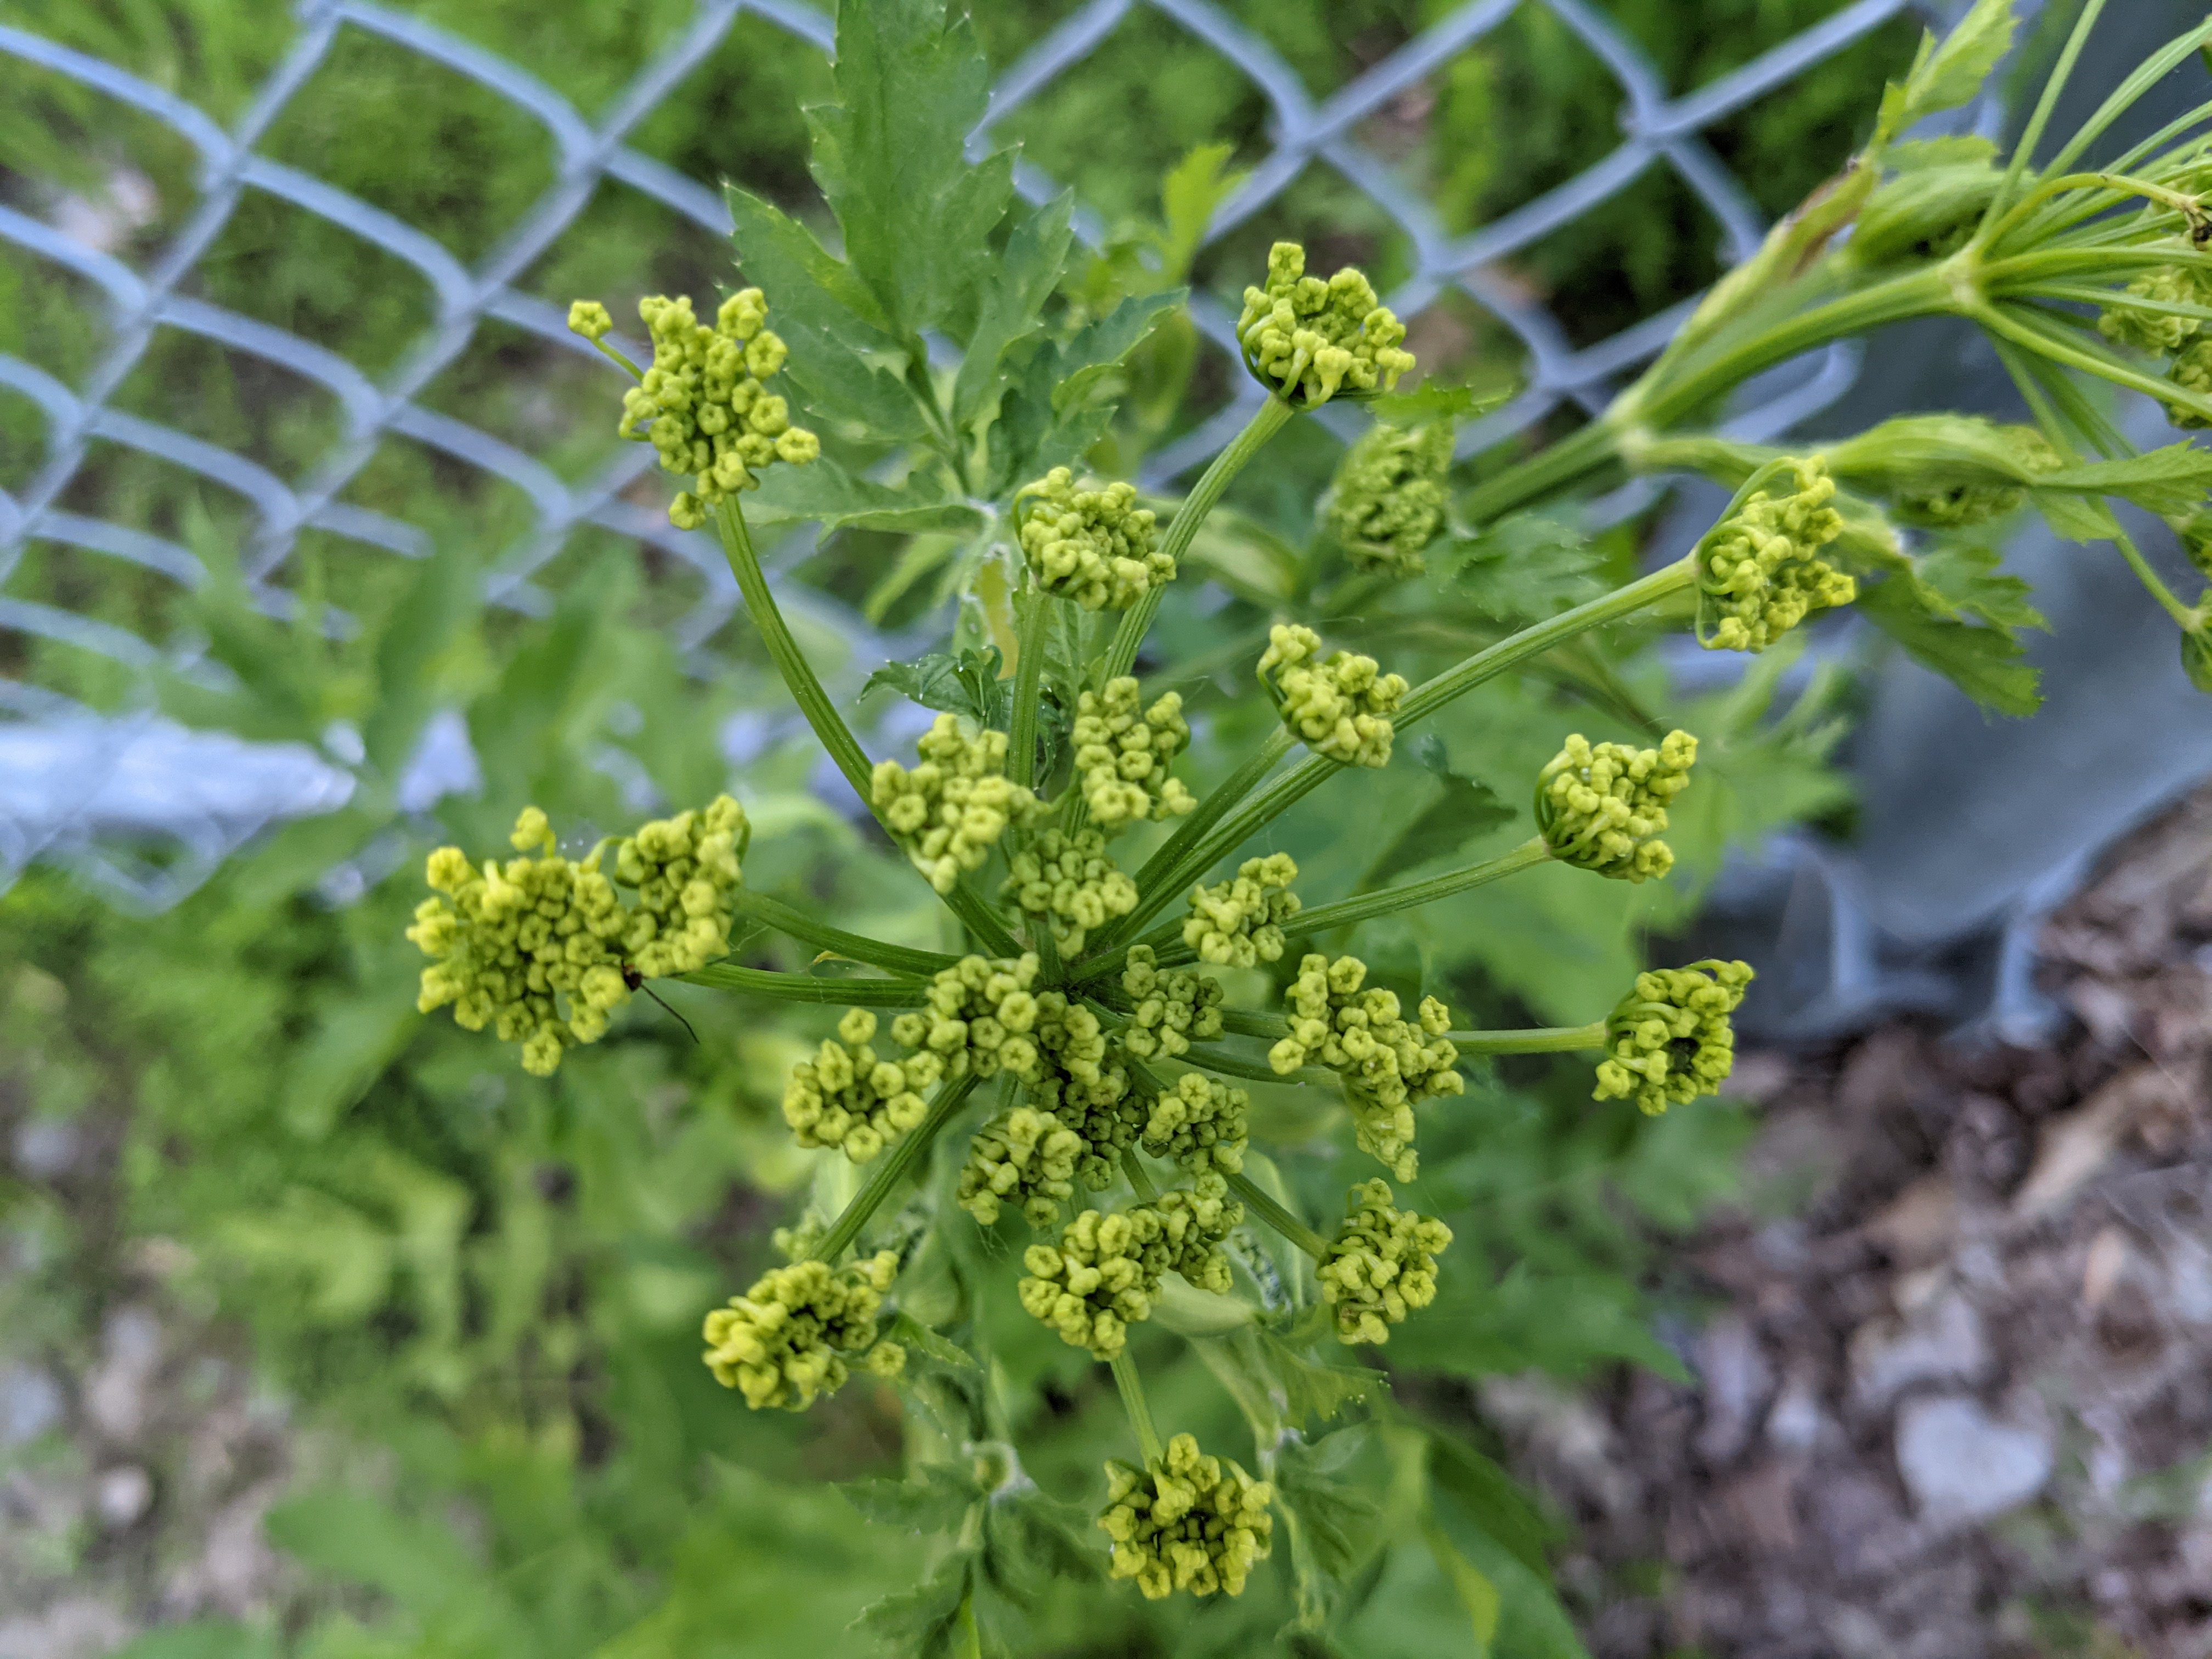 Wild parsnip - closed flower buds